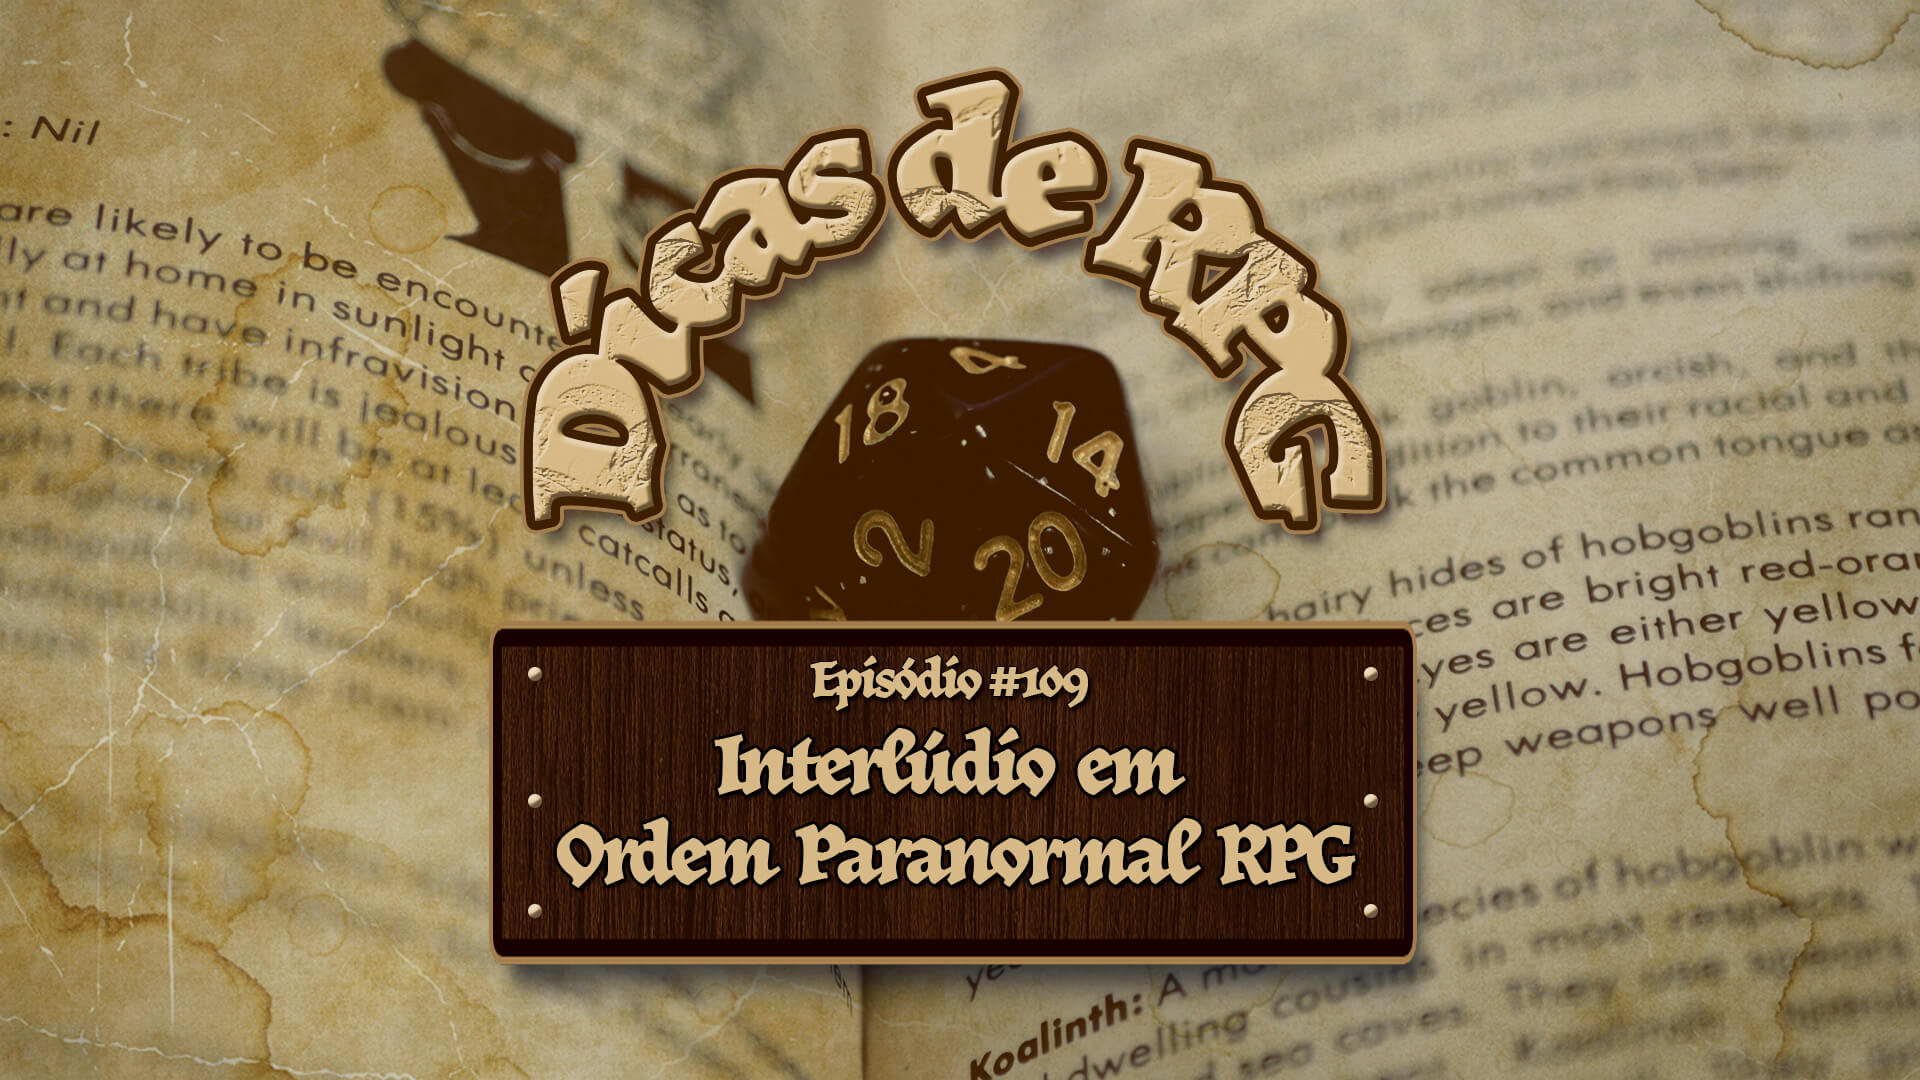 Cenas de Interlúdio em Ordem Paranormal RPG – Dicas de RPG #109